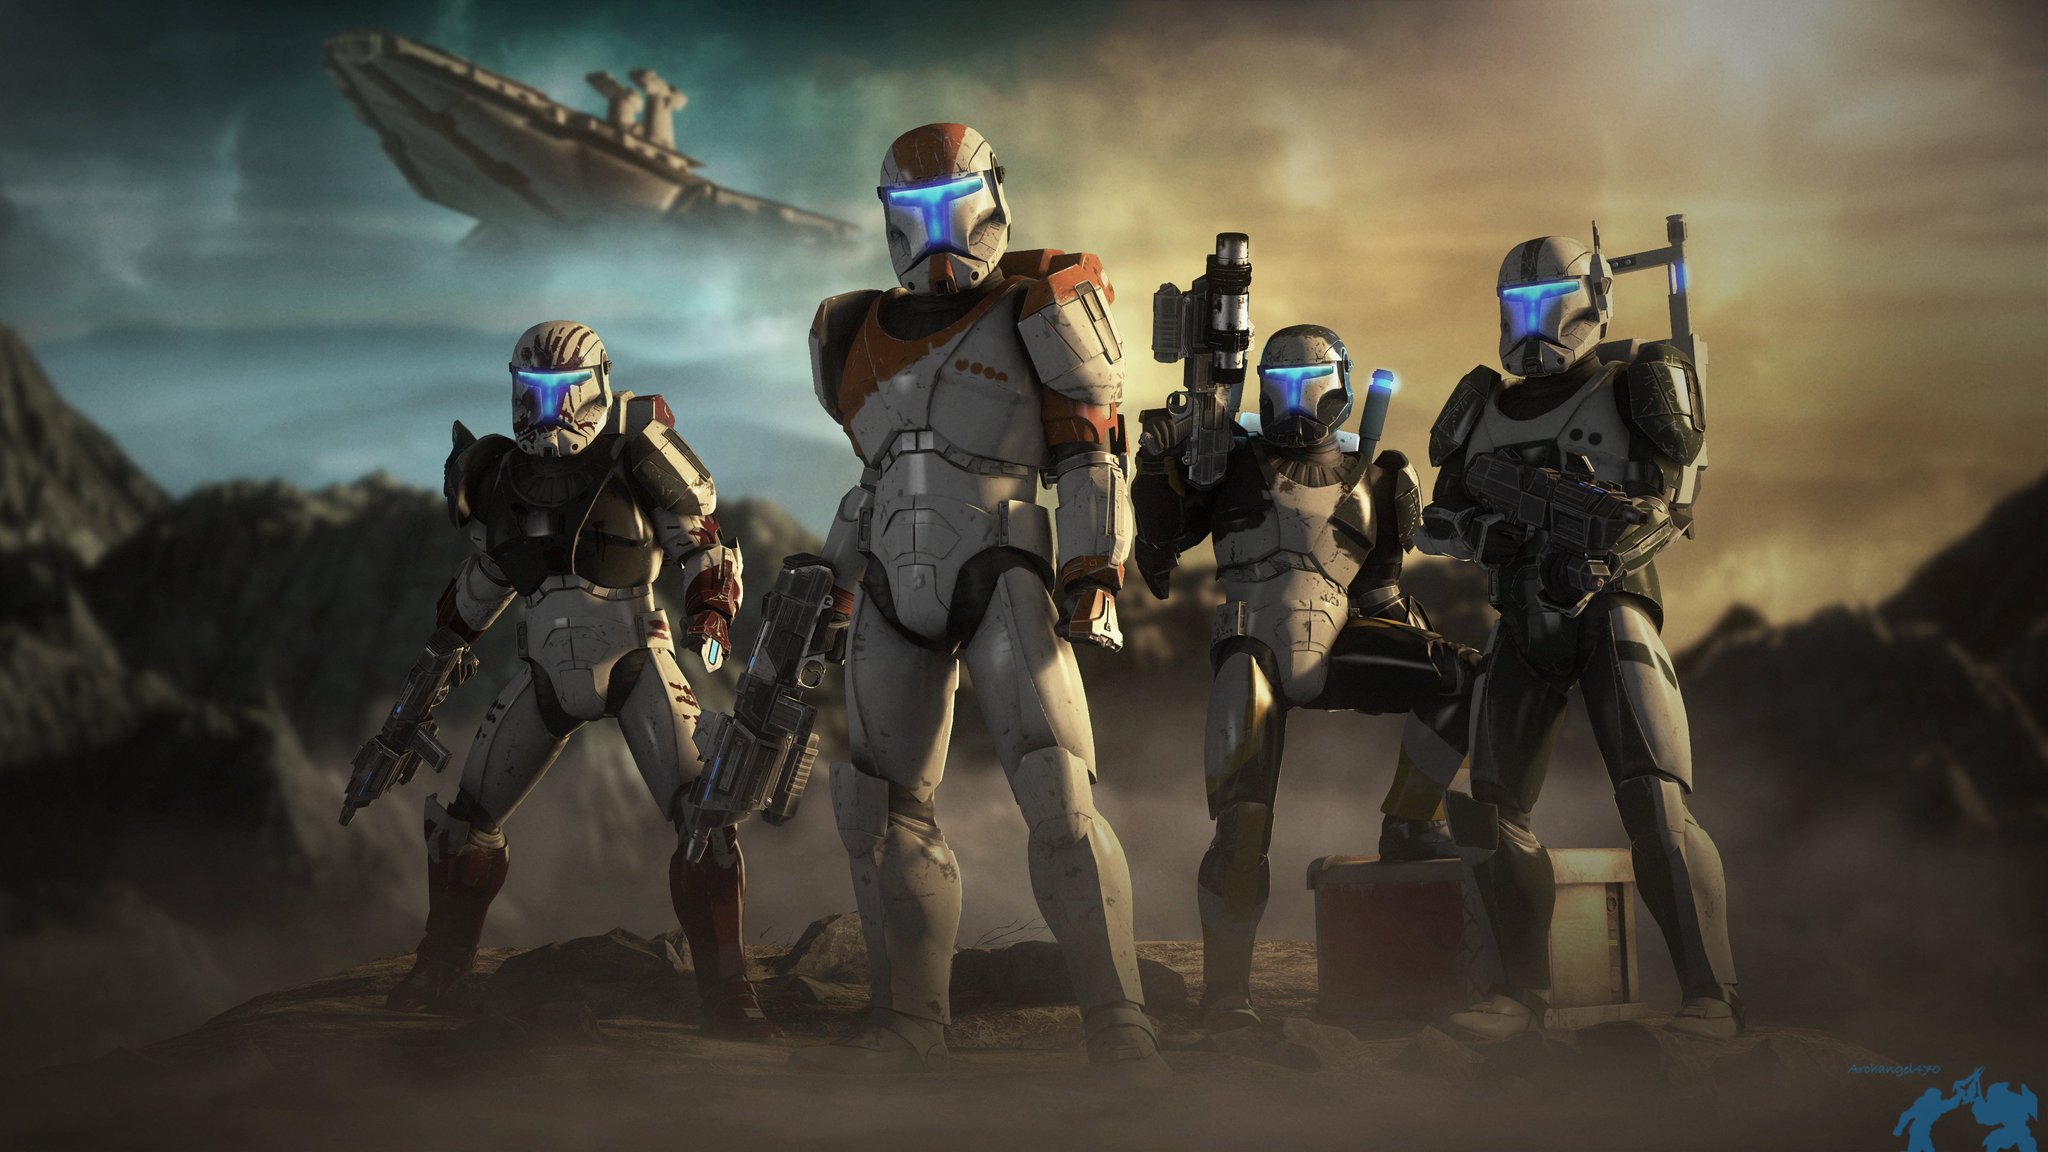 Star Wars: Republic Commando - Windows 10 Fix